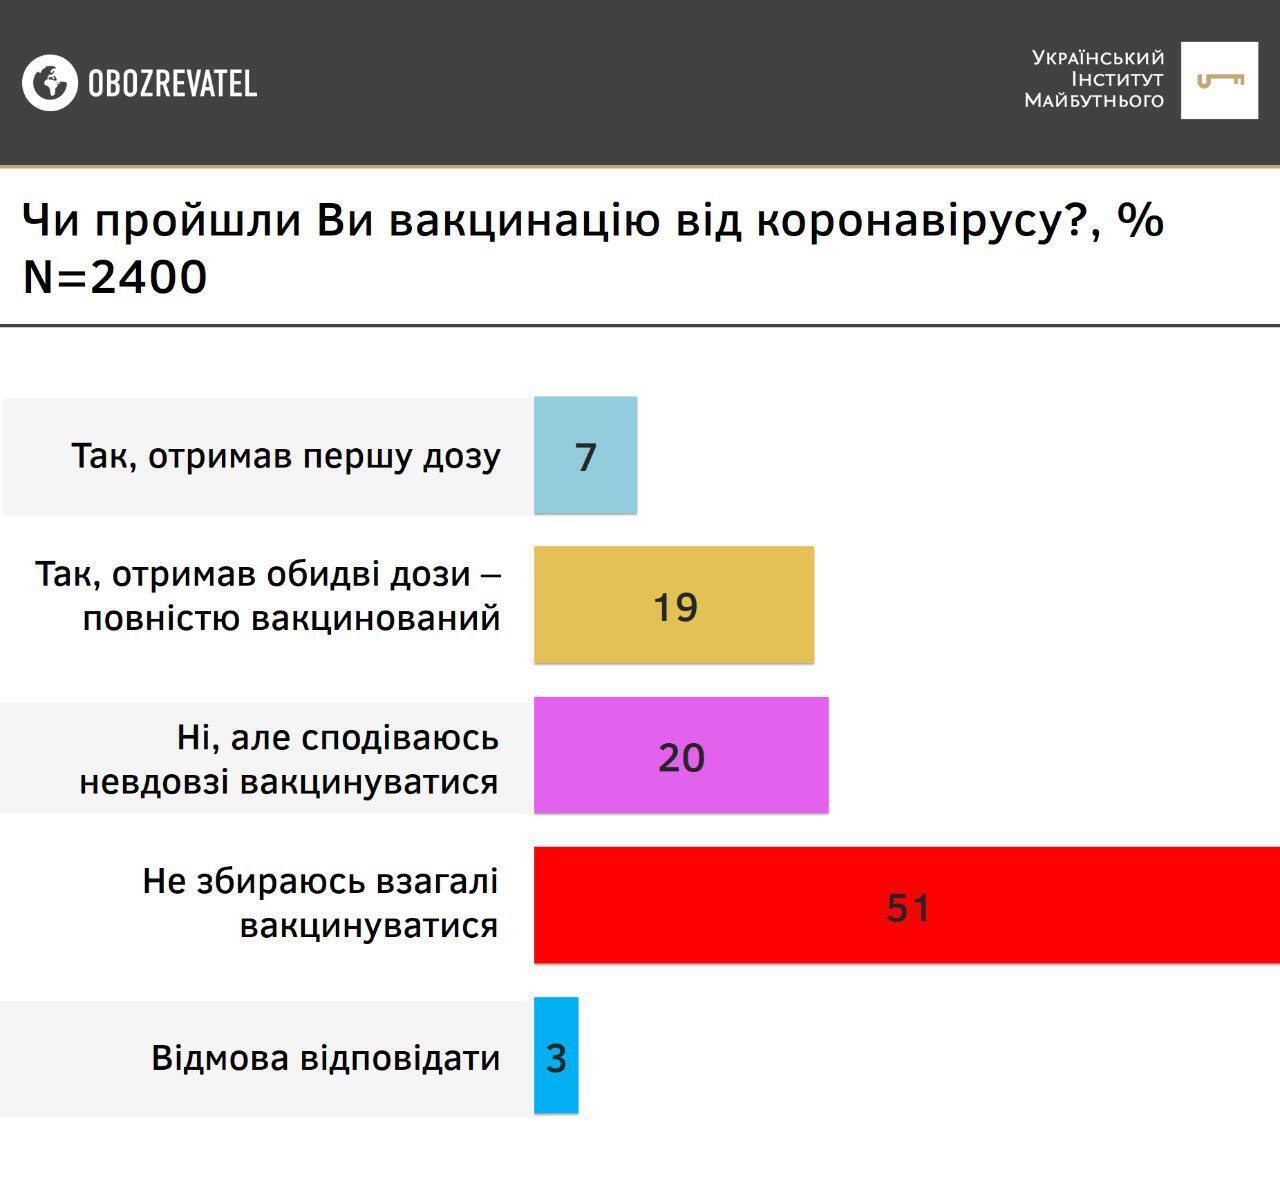 Большинство опрошенных украинцев не собирается вакцинироваться от коронавируса